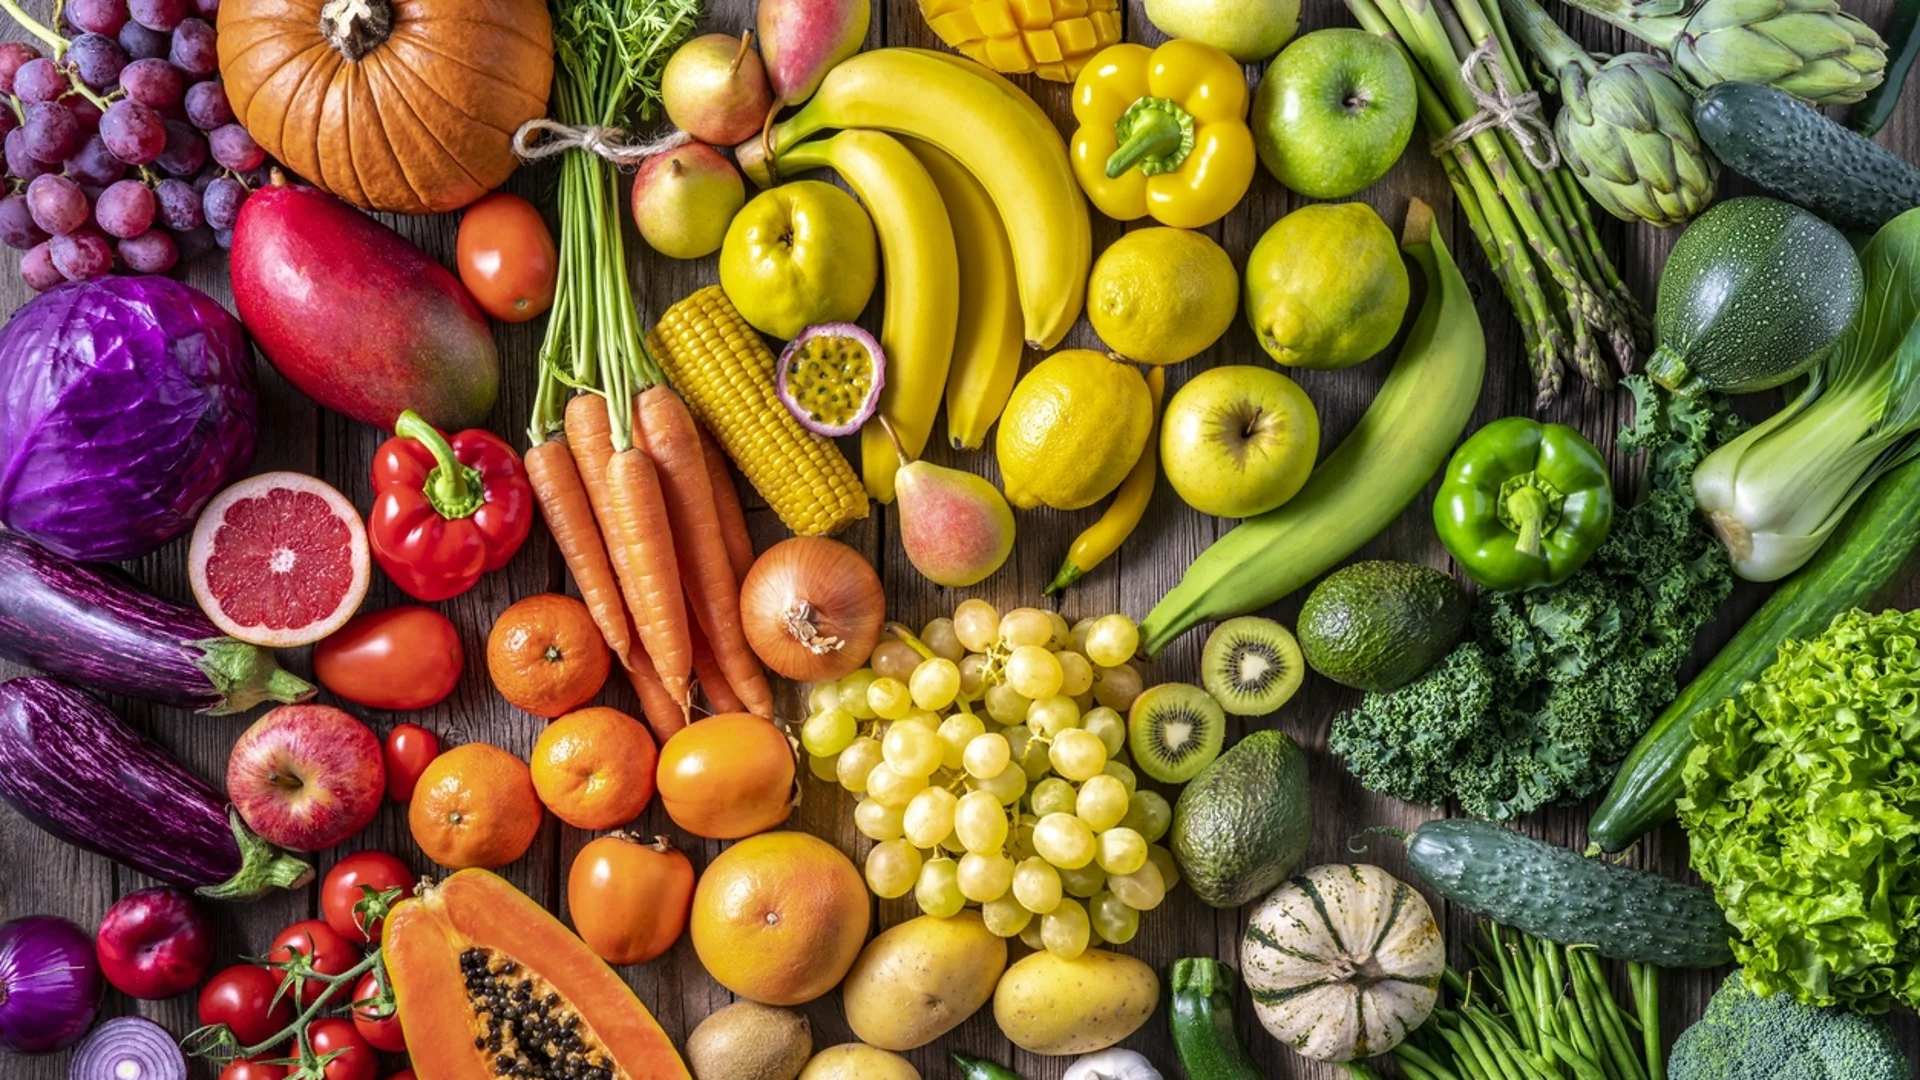 13 от най-малко здравословните плодове. А вие хапвате ли ги често?